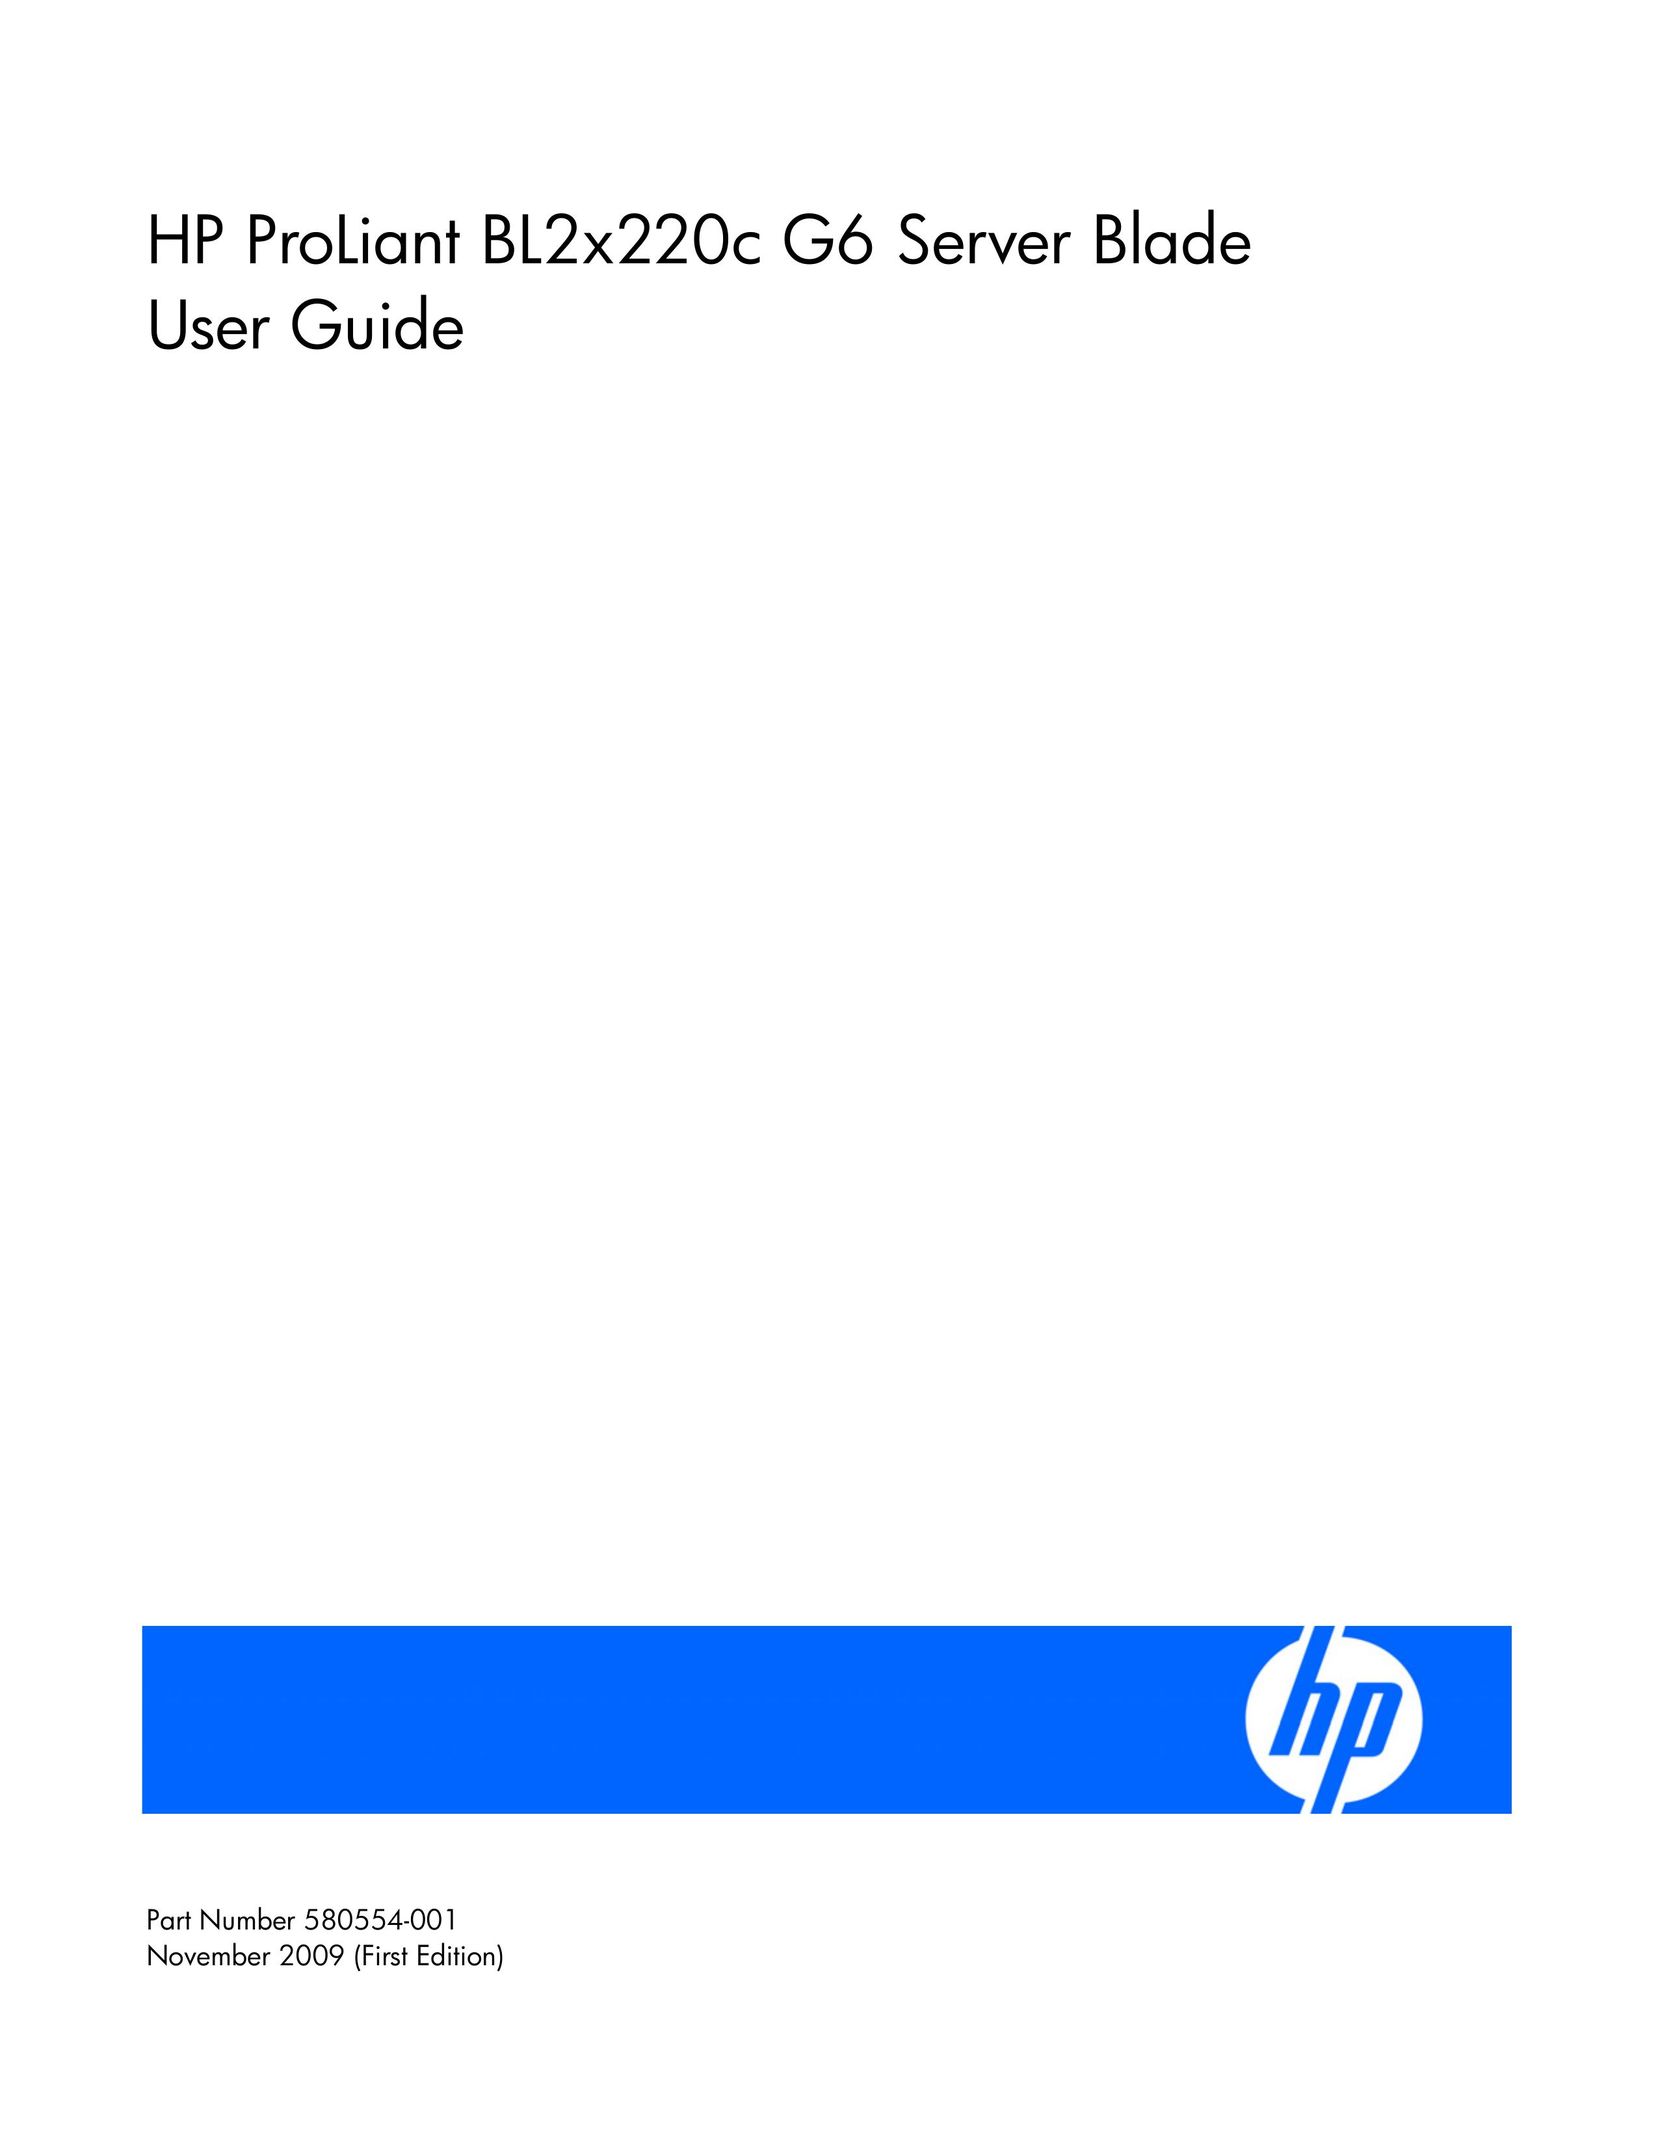 HP (Hewlett-Packard) 580554-001 Server User Manual